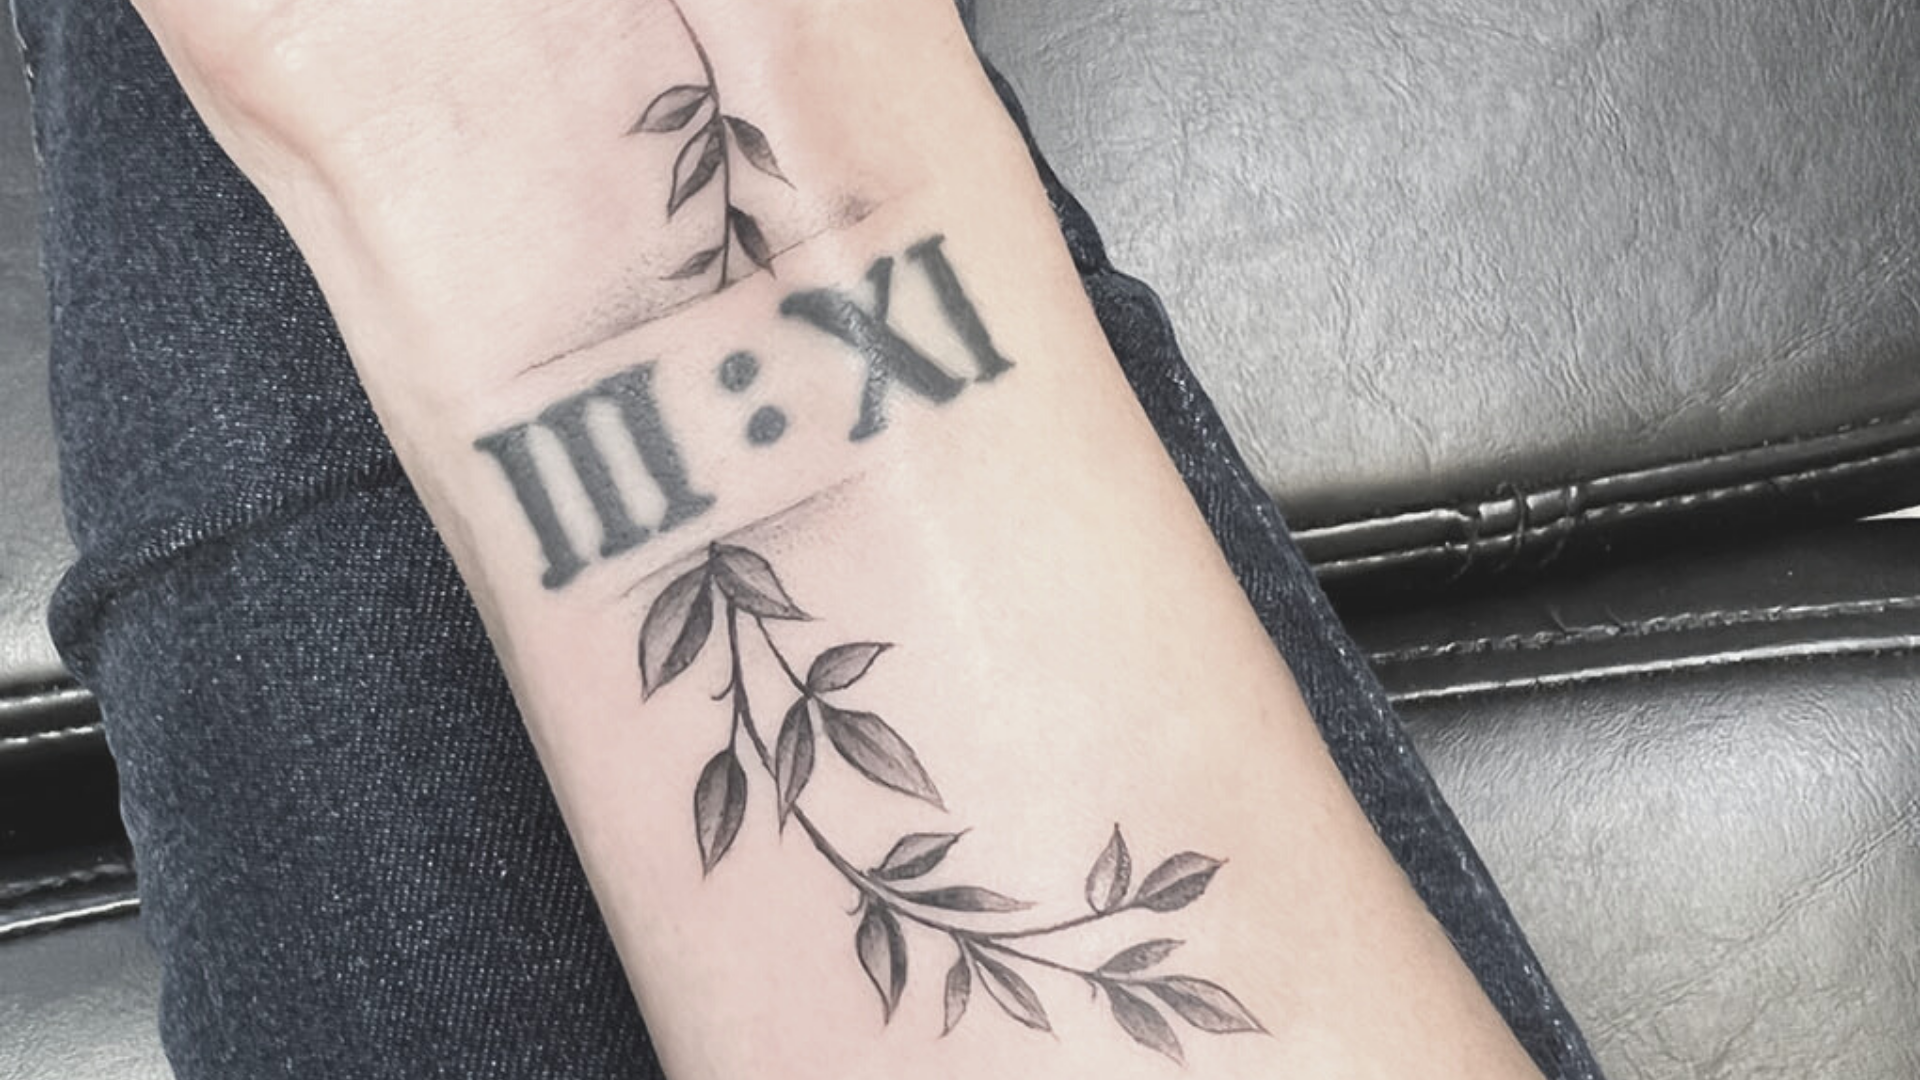 Tattoo Evgeniy Shteynborn  tattoo photo 1410438